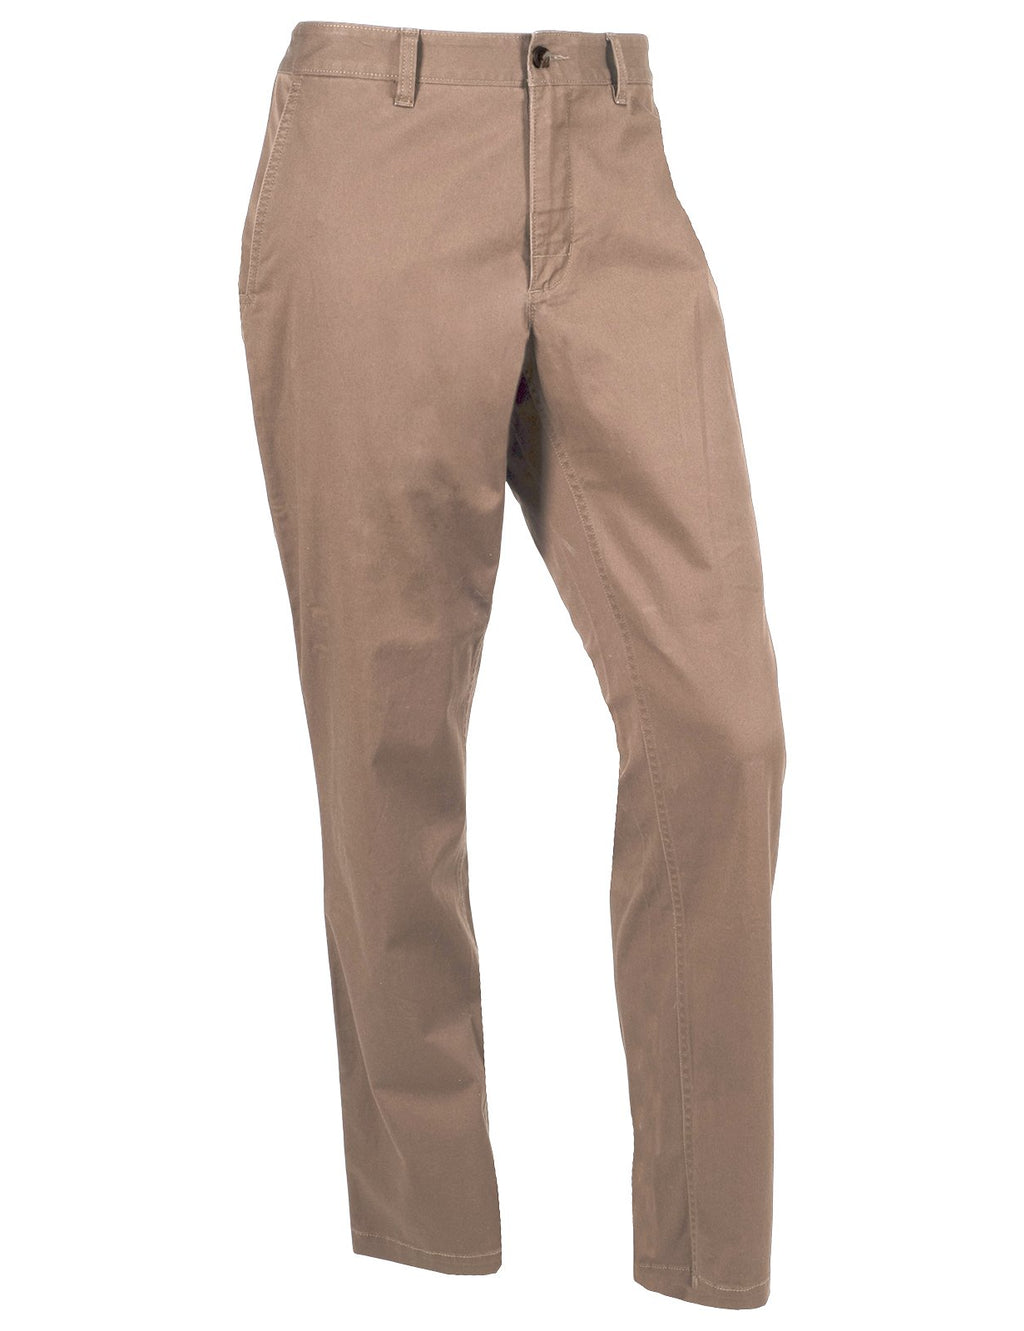 Khaki Sharps - Men's Custom-Fit Chino Dress Pants - SPOKE - SPOKE